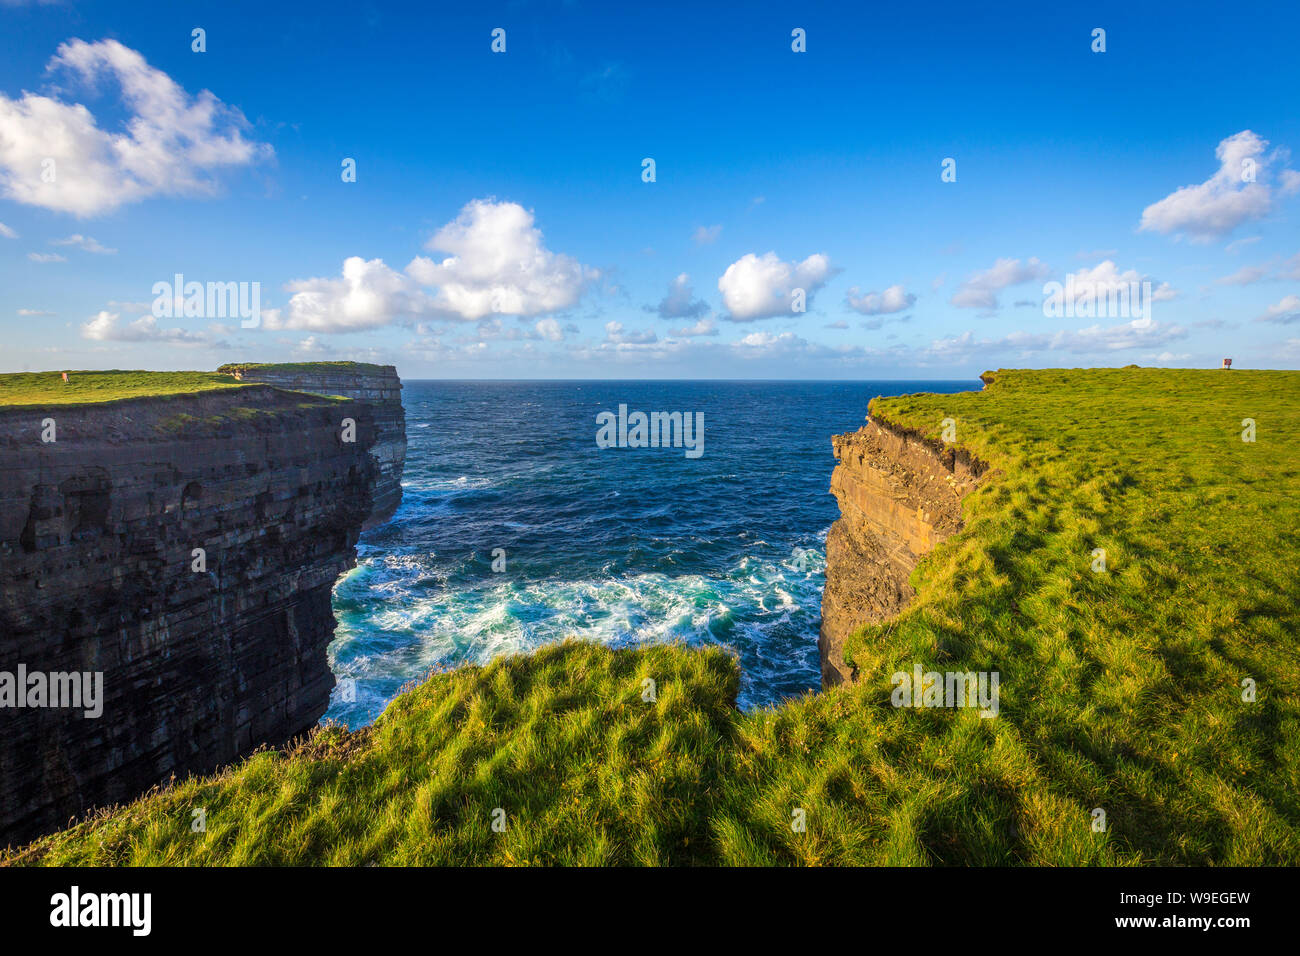 spectacular cliffs at Downpatrick Head, Co Mayo, Ireland Stock Photo